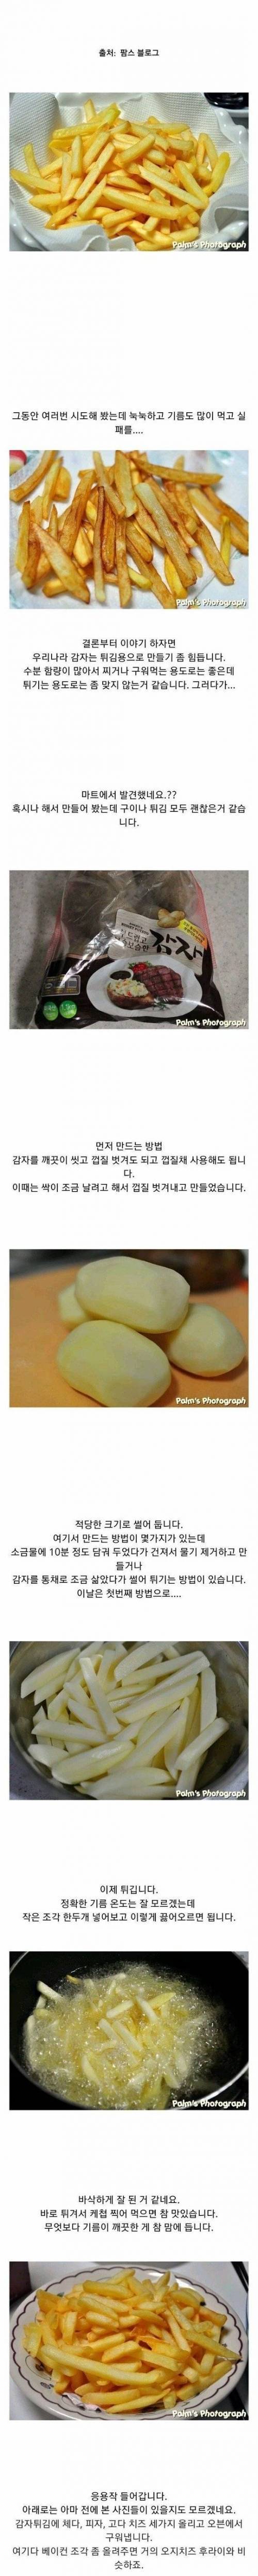 [스압] 감자튀김 장인.jpg